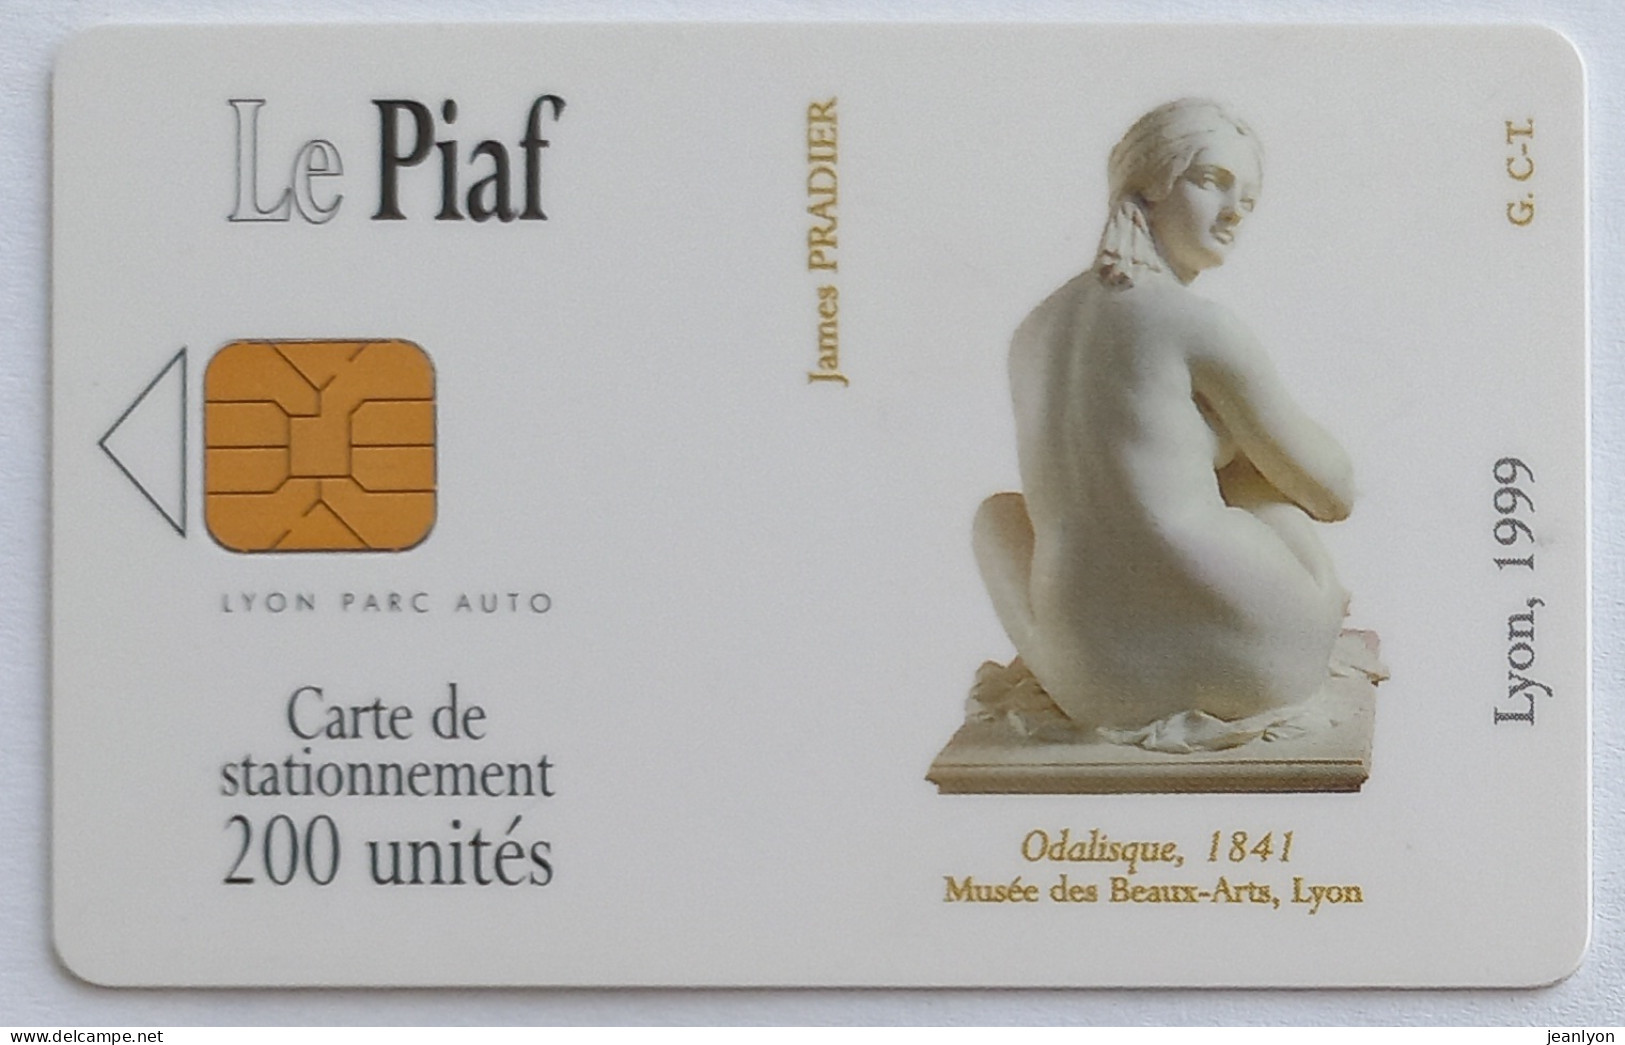 PIAF LYON - Carte Stationnement 1999 - ODALISQUE - Art / Statue - Musée Des Beaux Arts Lyon - Tarjetas De Estacionamiento (PIAF)